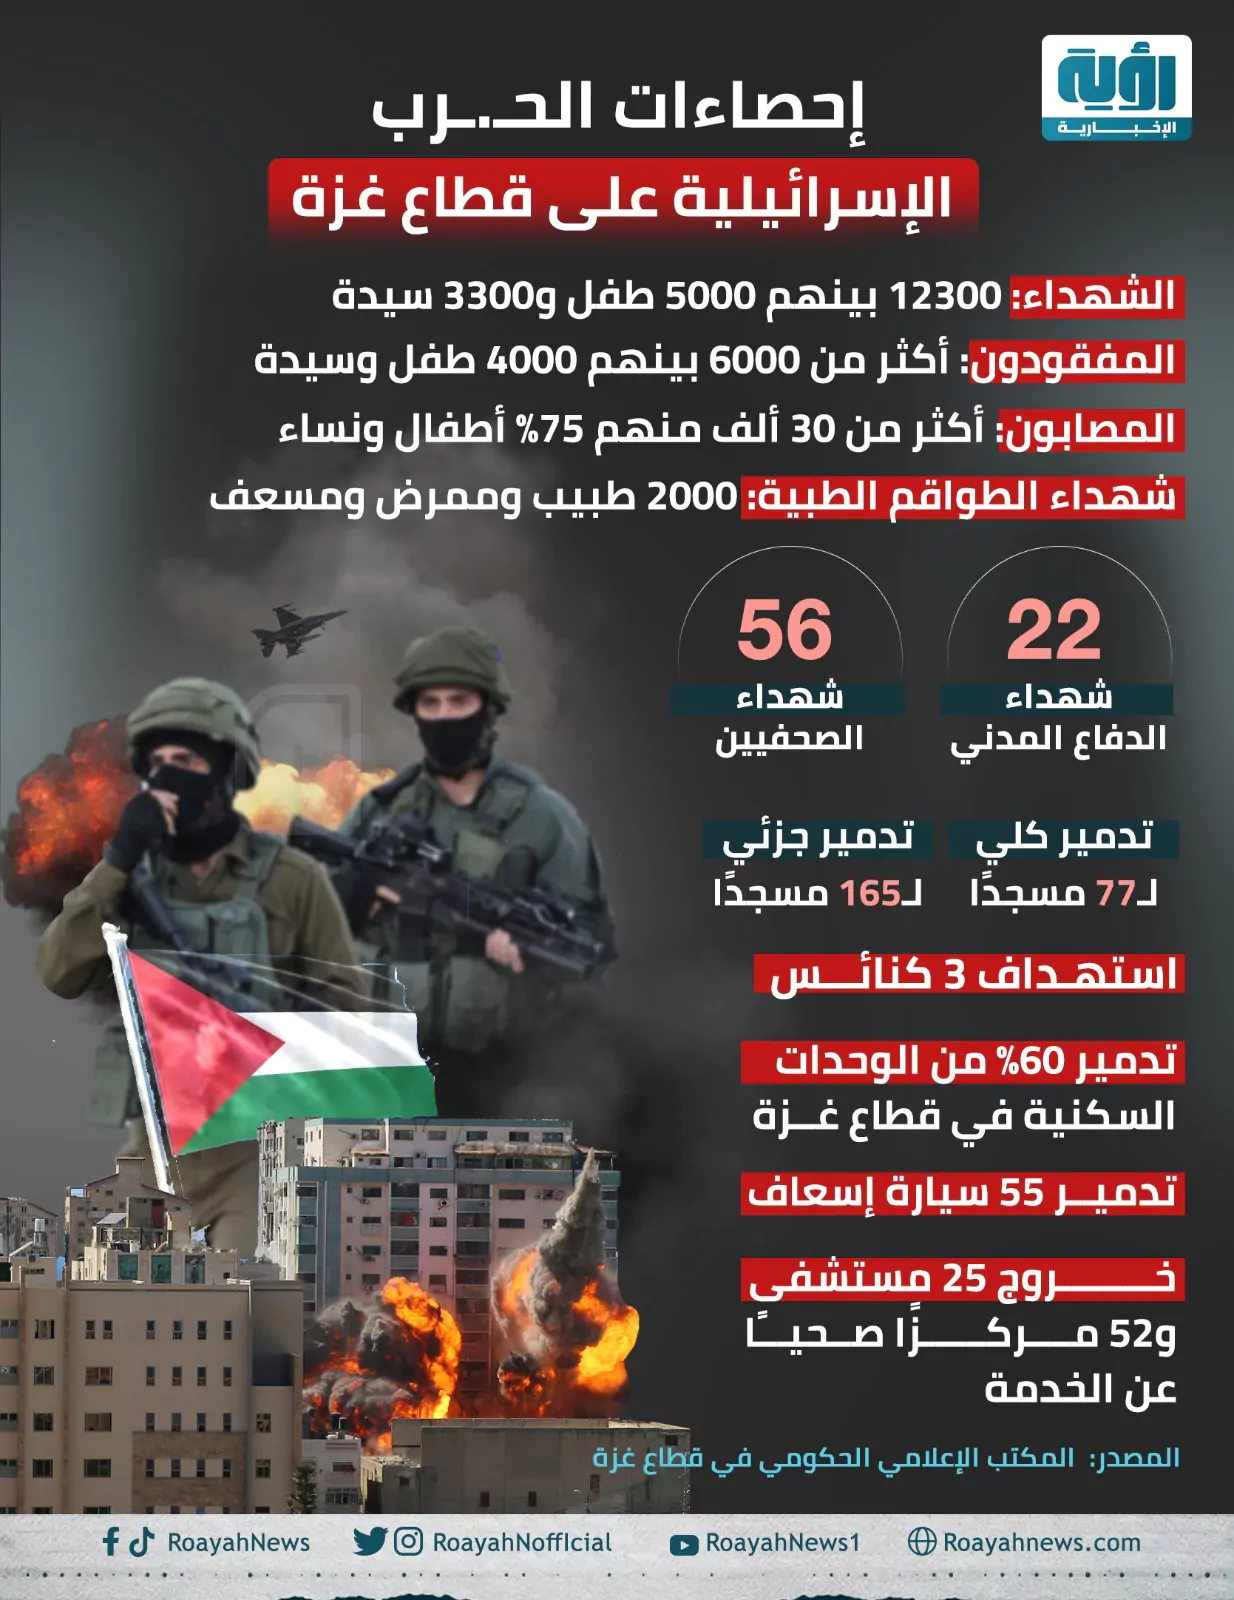 نيويورك تايمز: إسرائيل تقتل المدنيين في غزة بوتيرة تاريخية